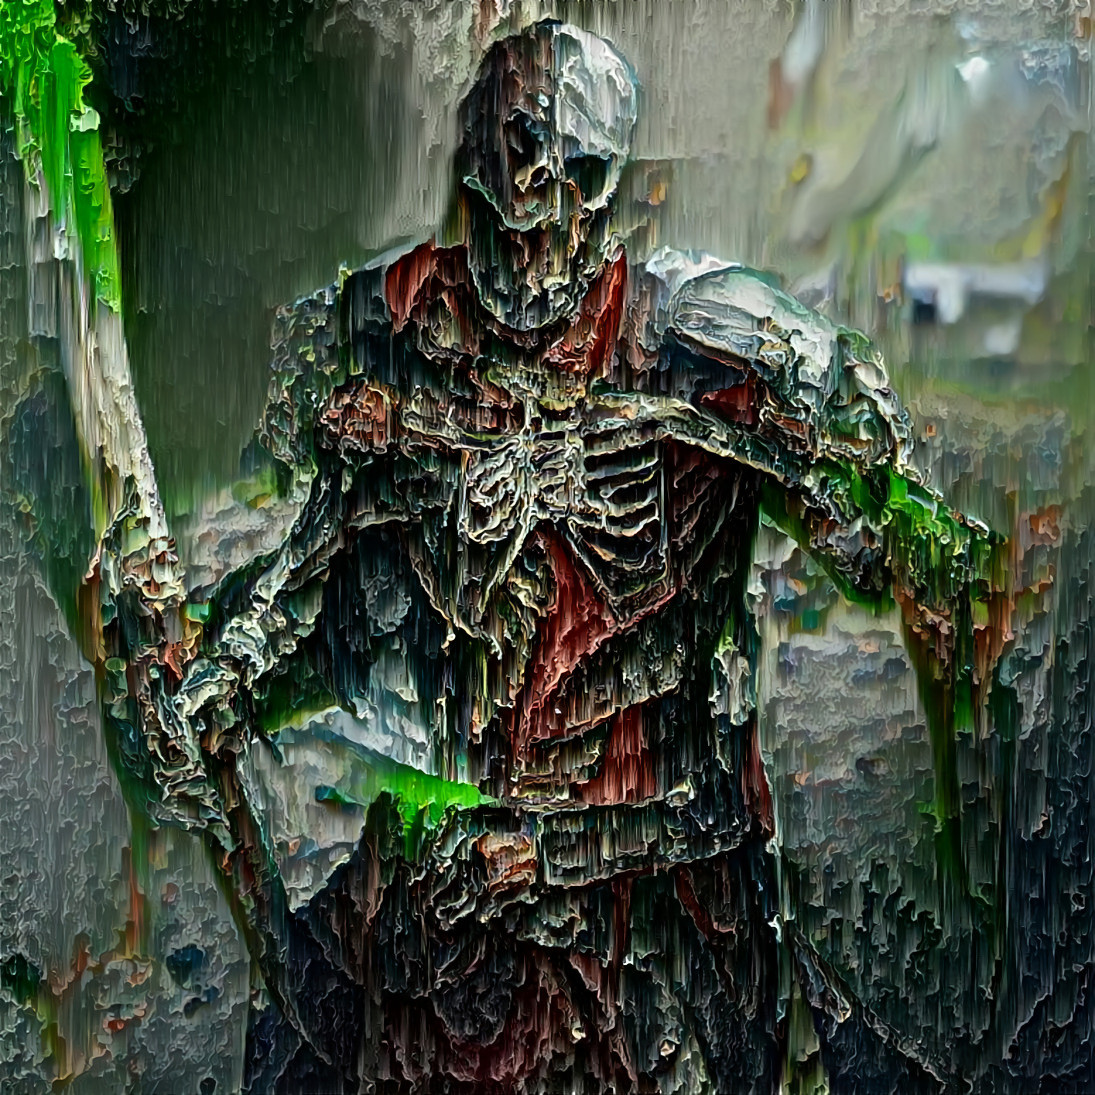 VQGAN-generated skeletal warrior